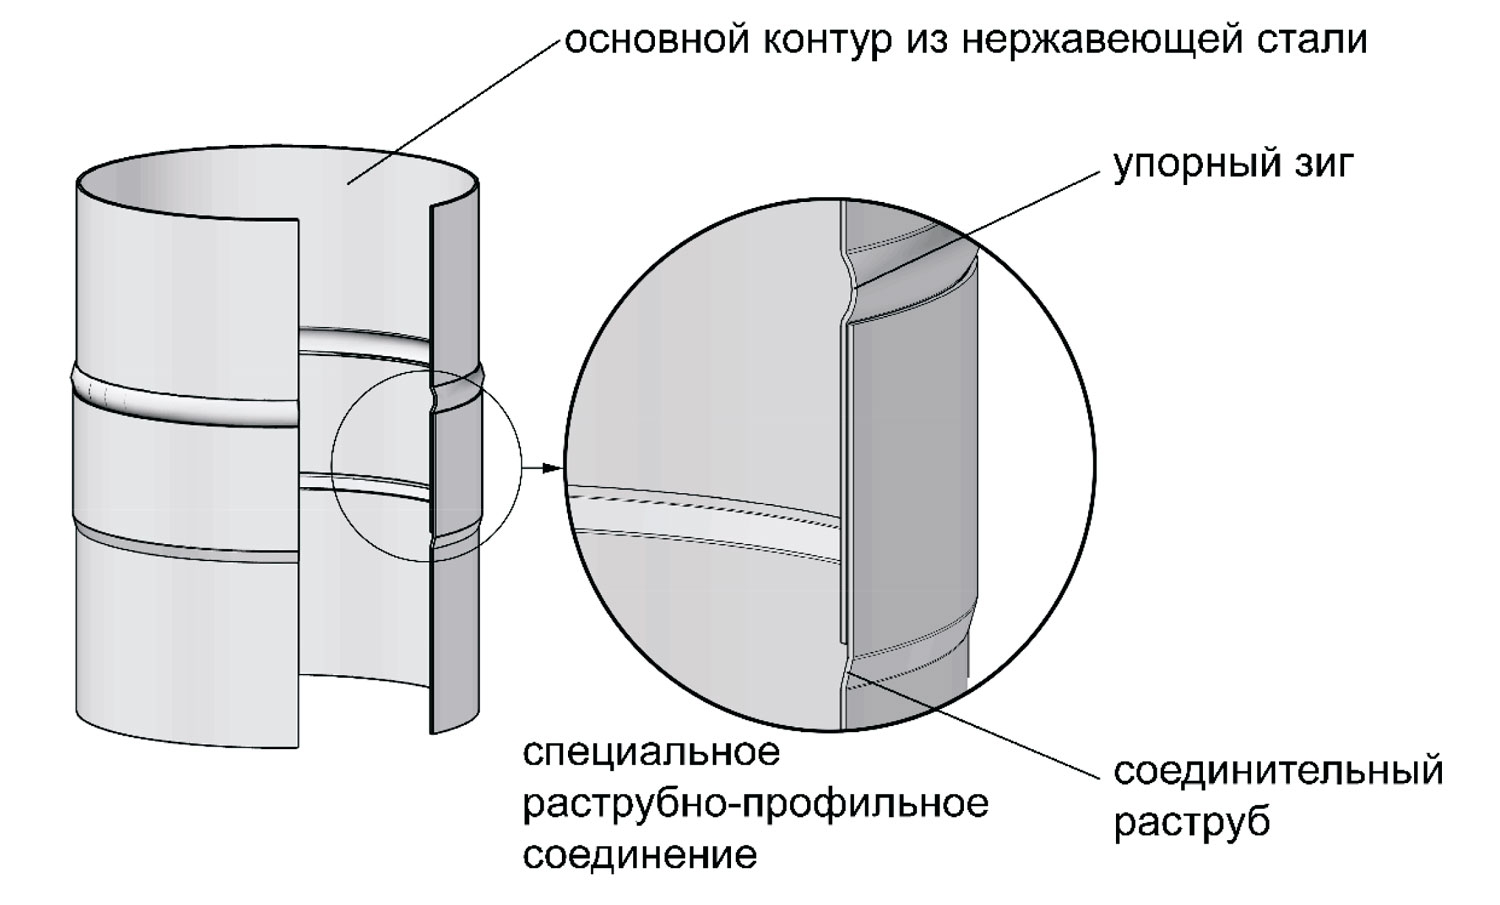 Фрагмент соединения двух одноконтурных элементов системы VBR ВУЛКАН